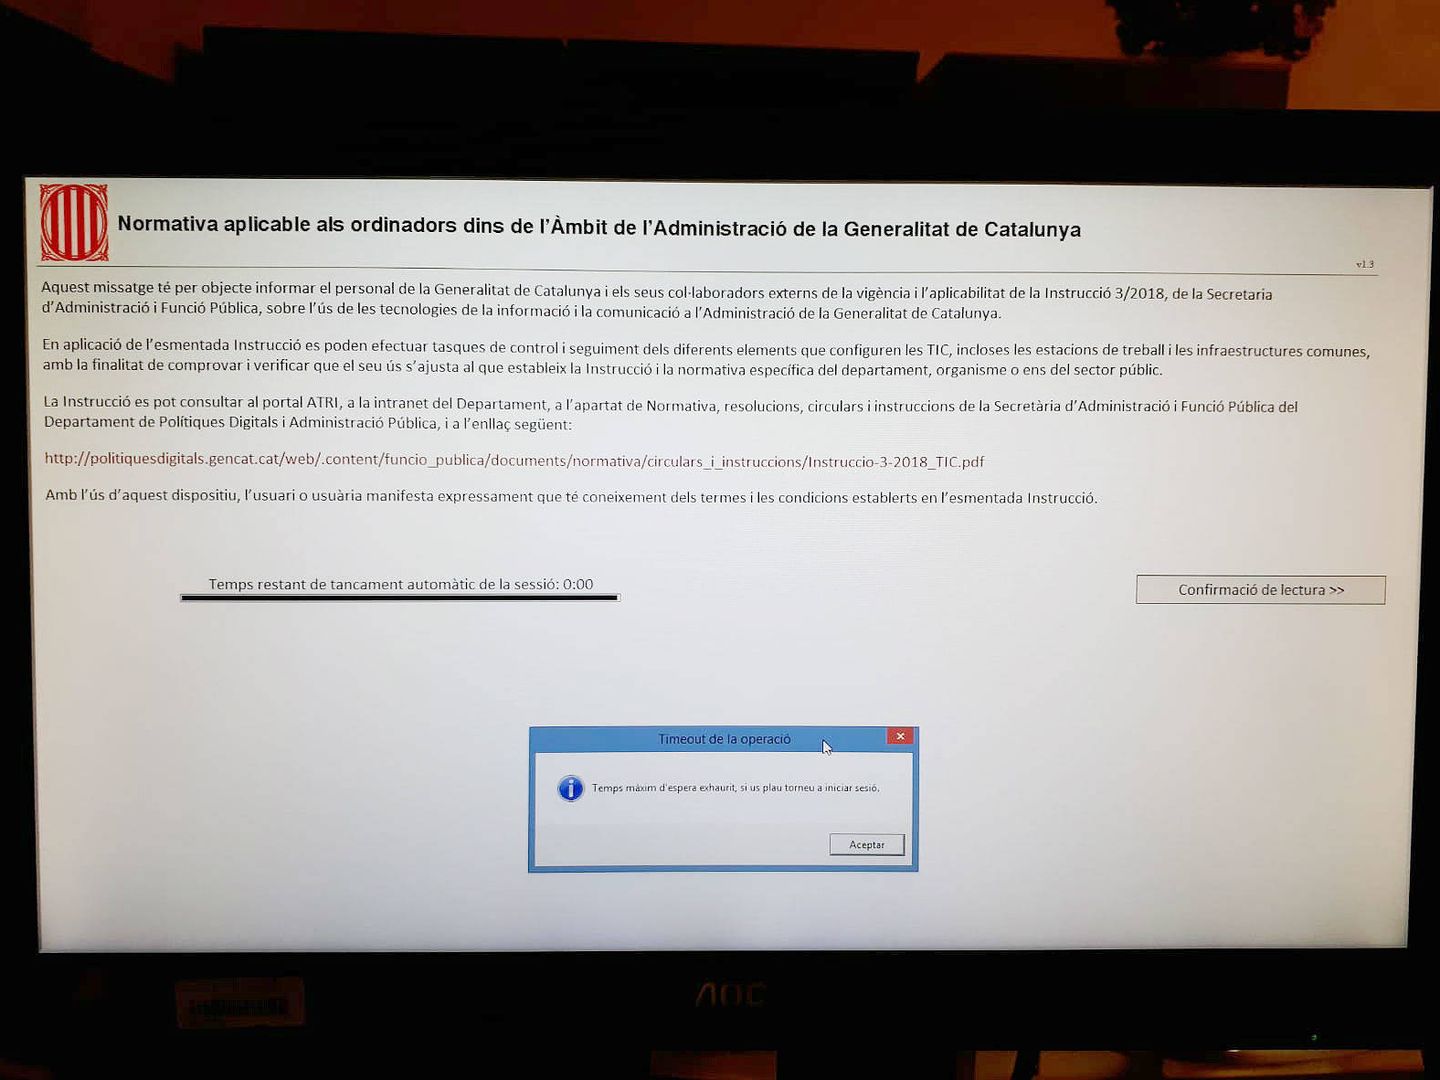 Captura del mensaje en uno de los ordenadores de jueces y magistrados en Cataluña.